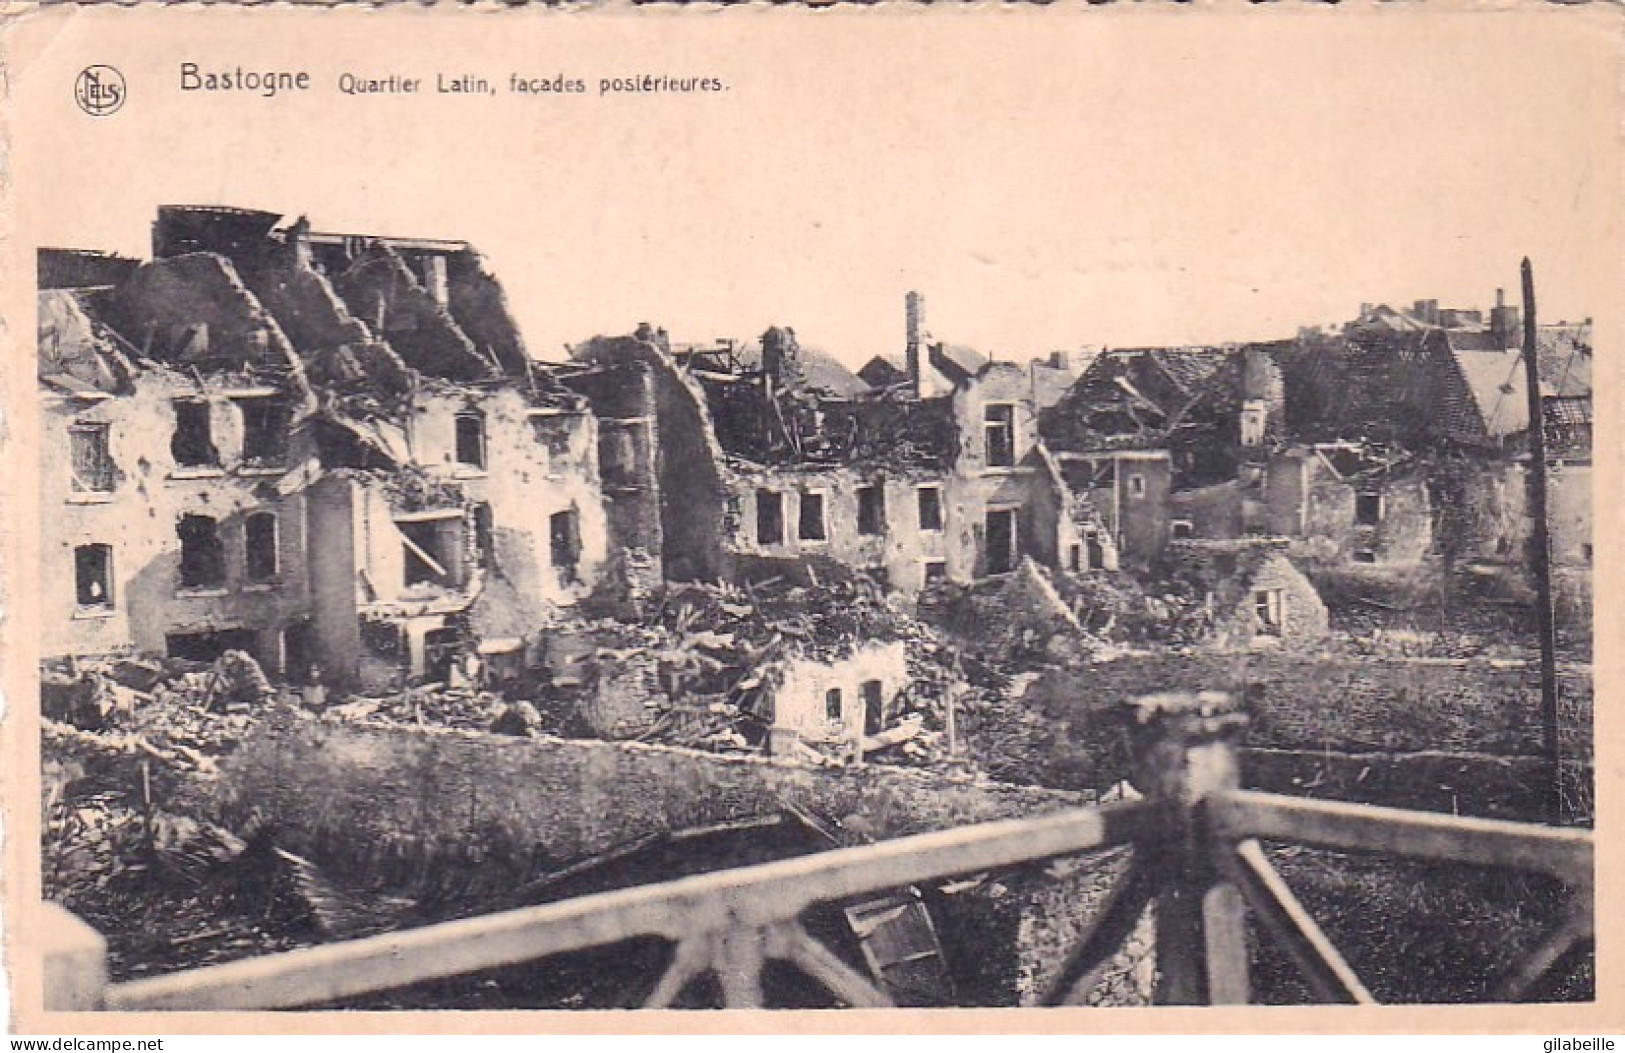  Bastogne - Quartier Latin - Facades Posterieures - Apres Le Siege De La Ville Decembre 1944 - Bastogne